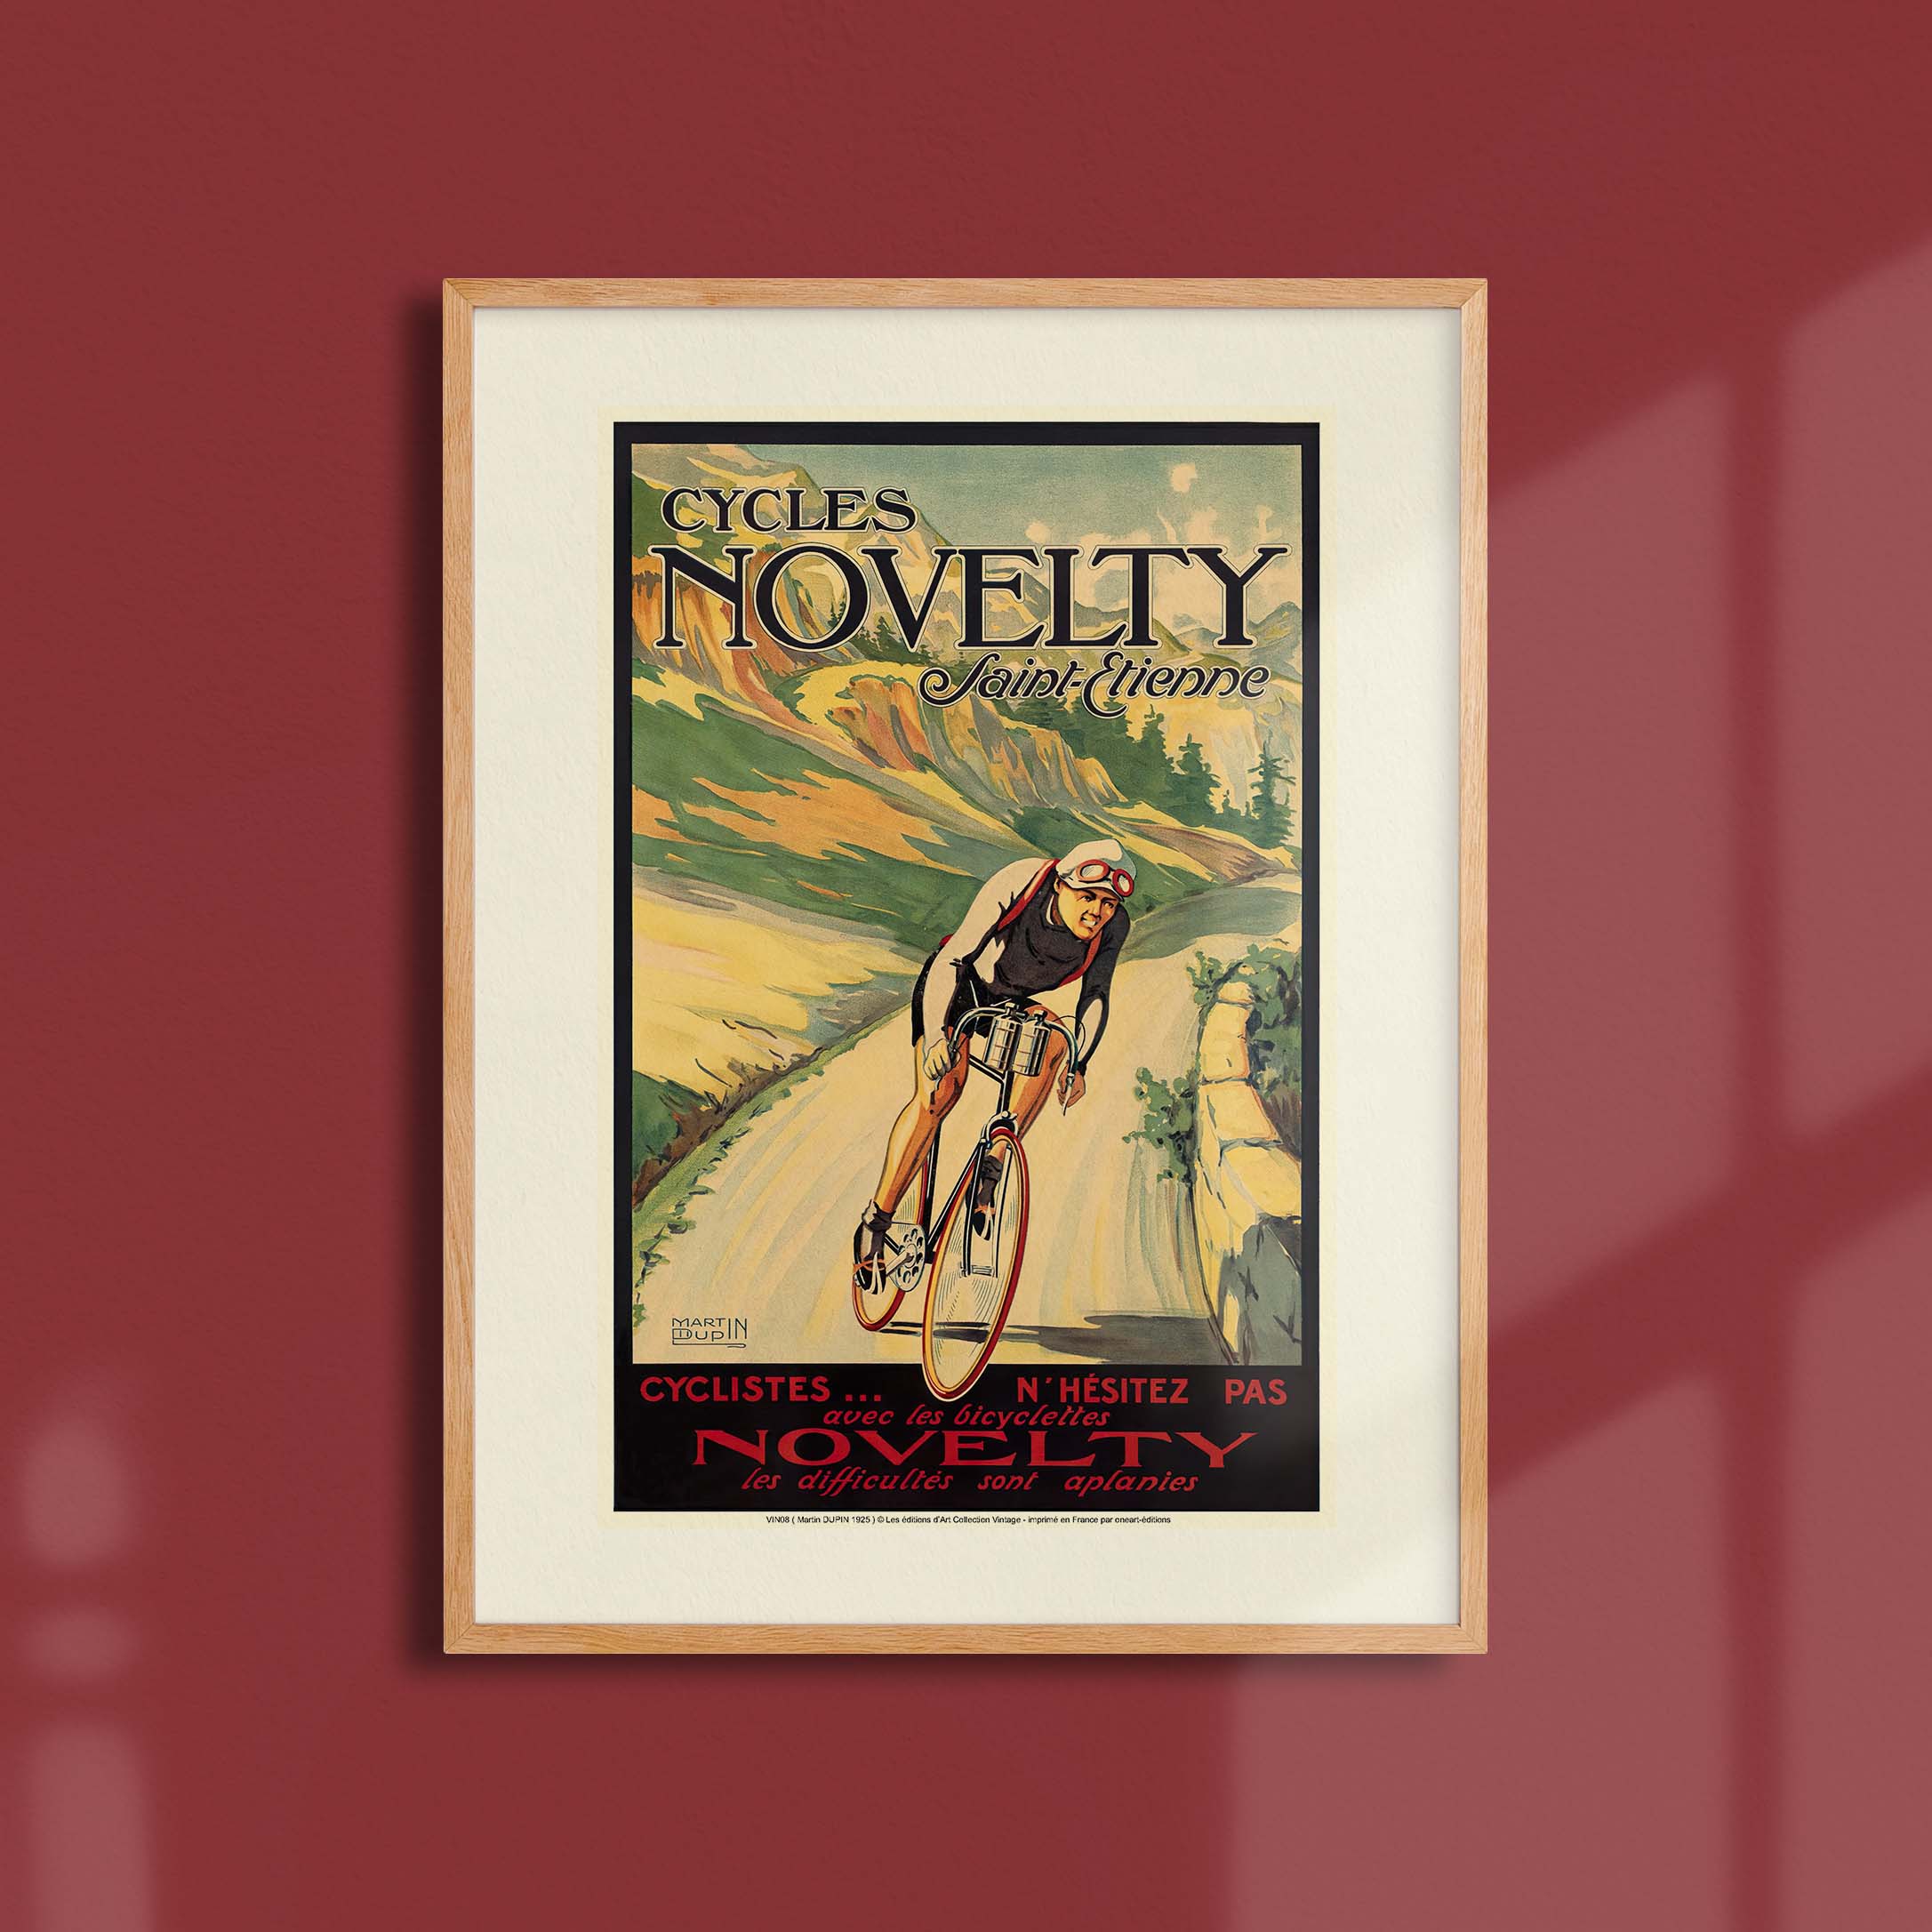 Affiche publicité vintage - Cycles Novelty-oneart.fr